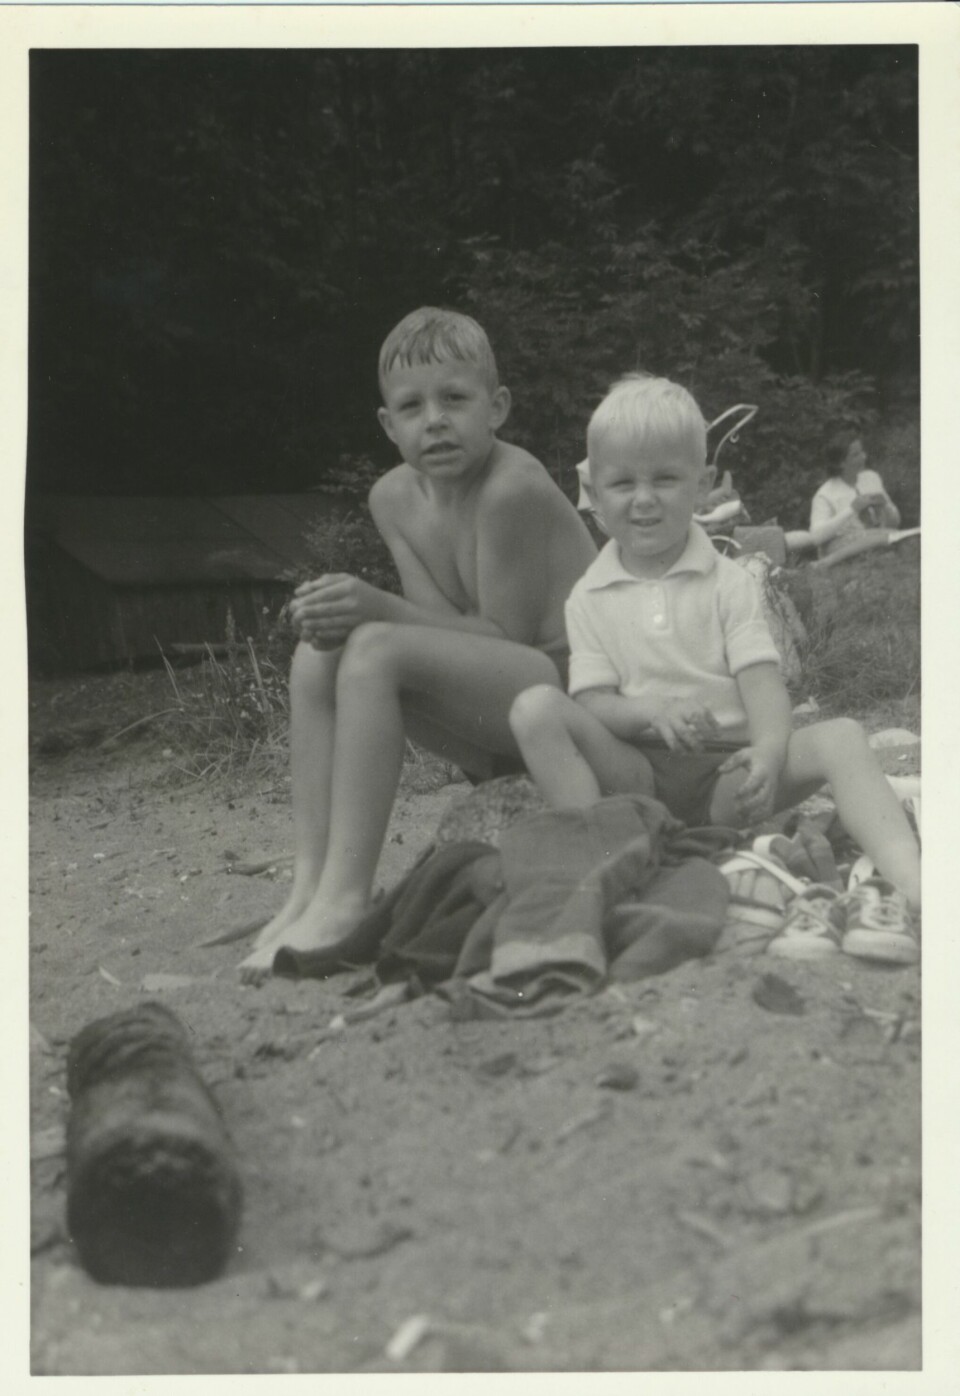 BEACH BOYS: Stian Elle og lillebroren Bård, på stranda på Skiphelle sør for Drøbak i 1969. De to brødrene hadde et tett og godt forhold.